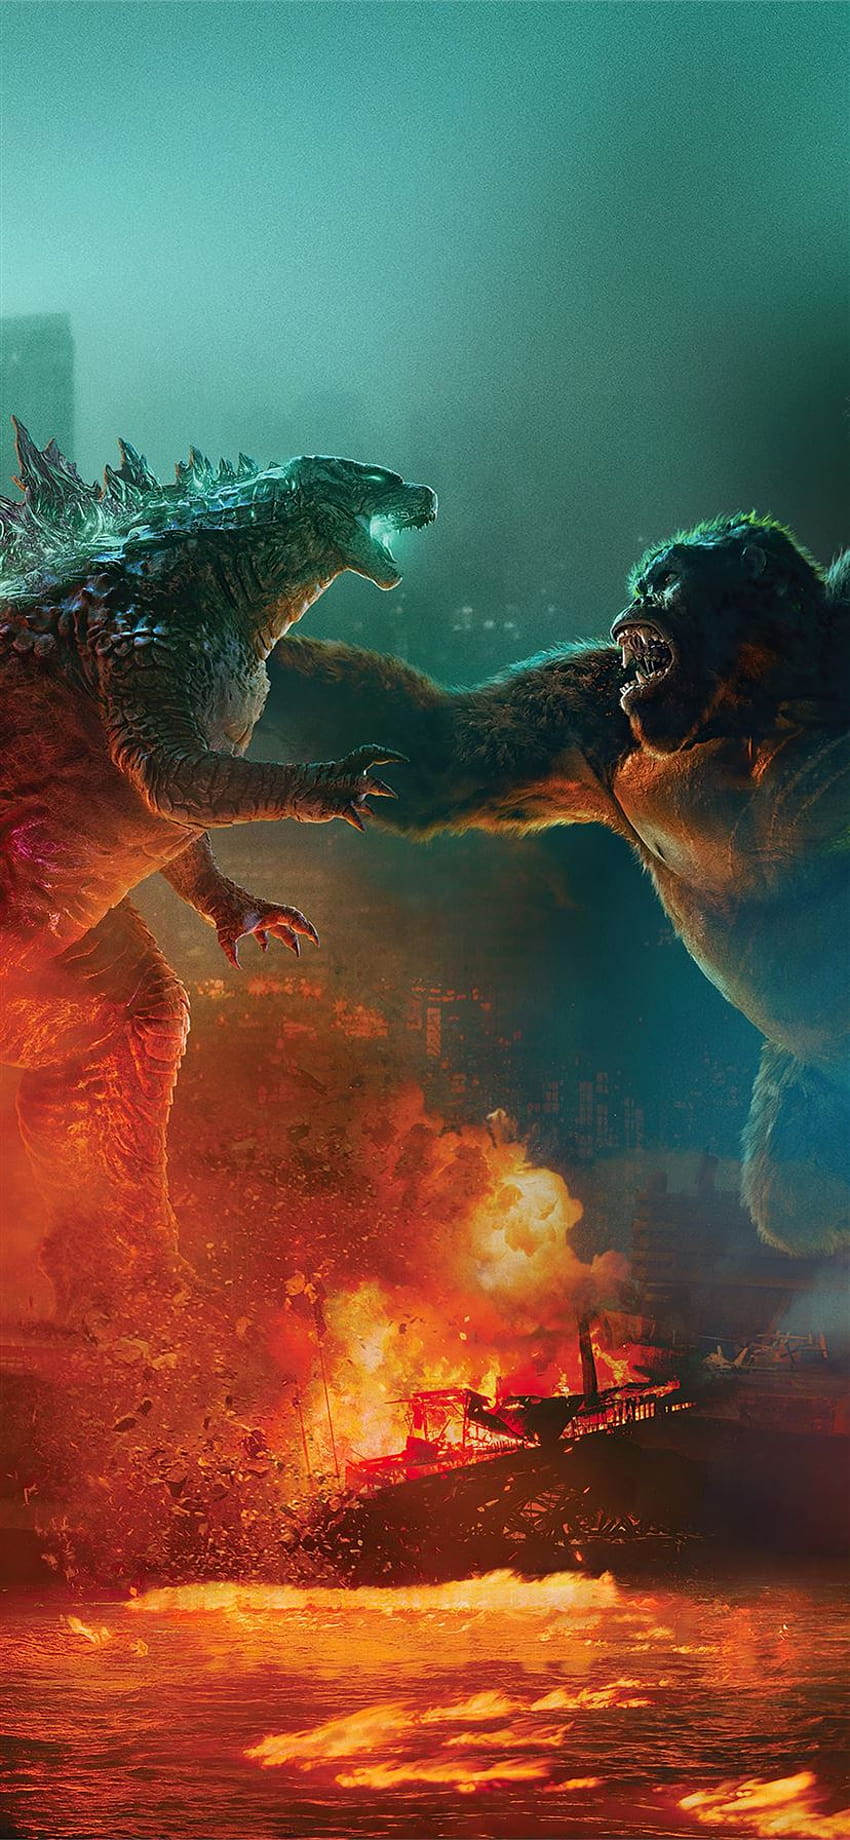 Meilleur Godzilla contre kong iPhone 11, king kong contre godzilla iphone Fond d'écran de téléphone HD